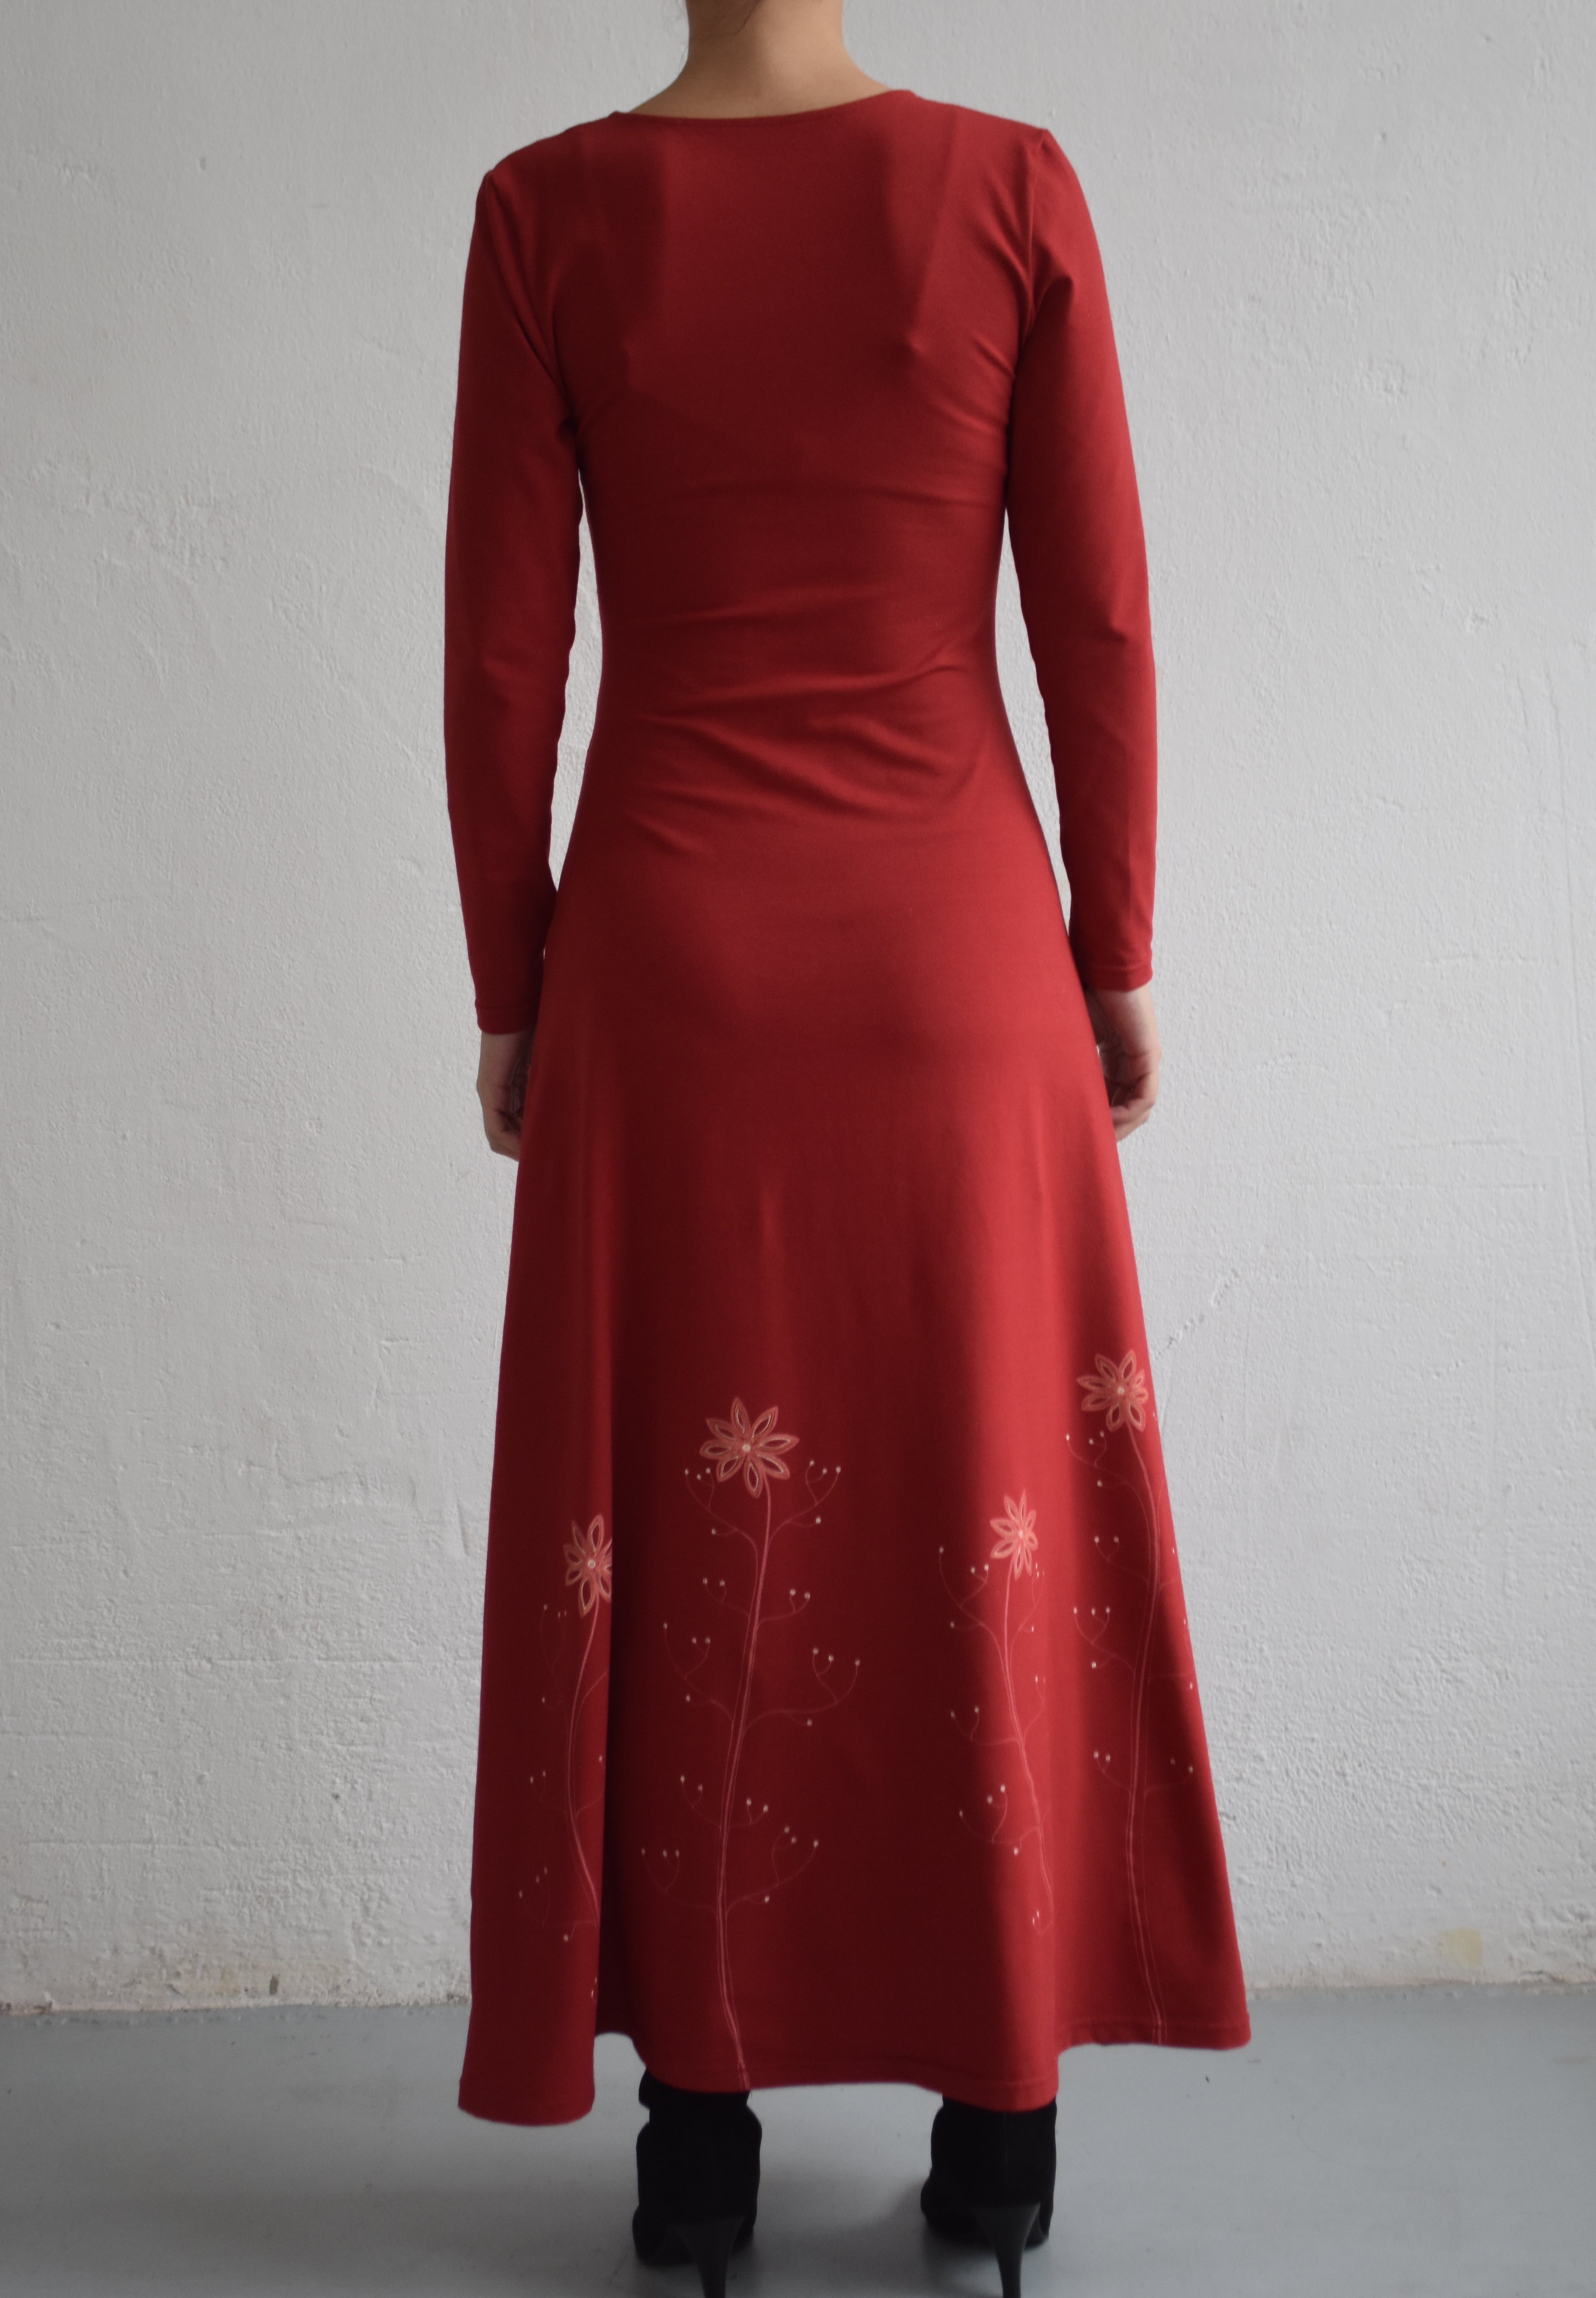 AYLA átlapolós ruha - Piros